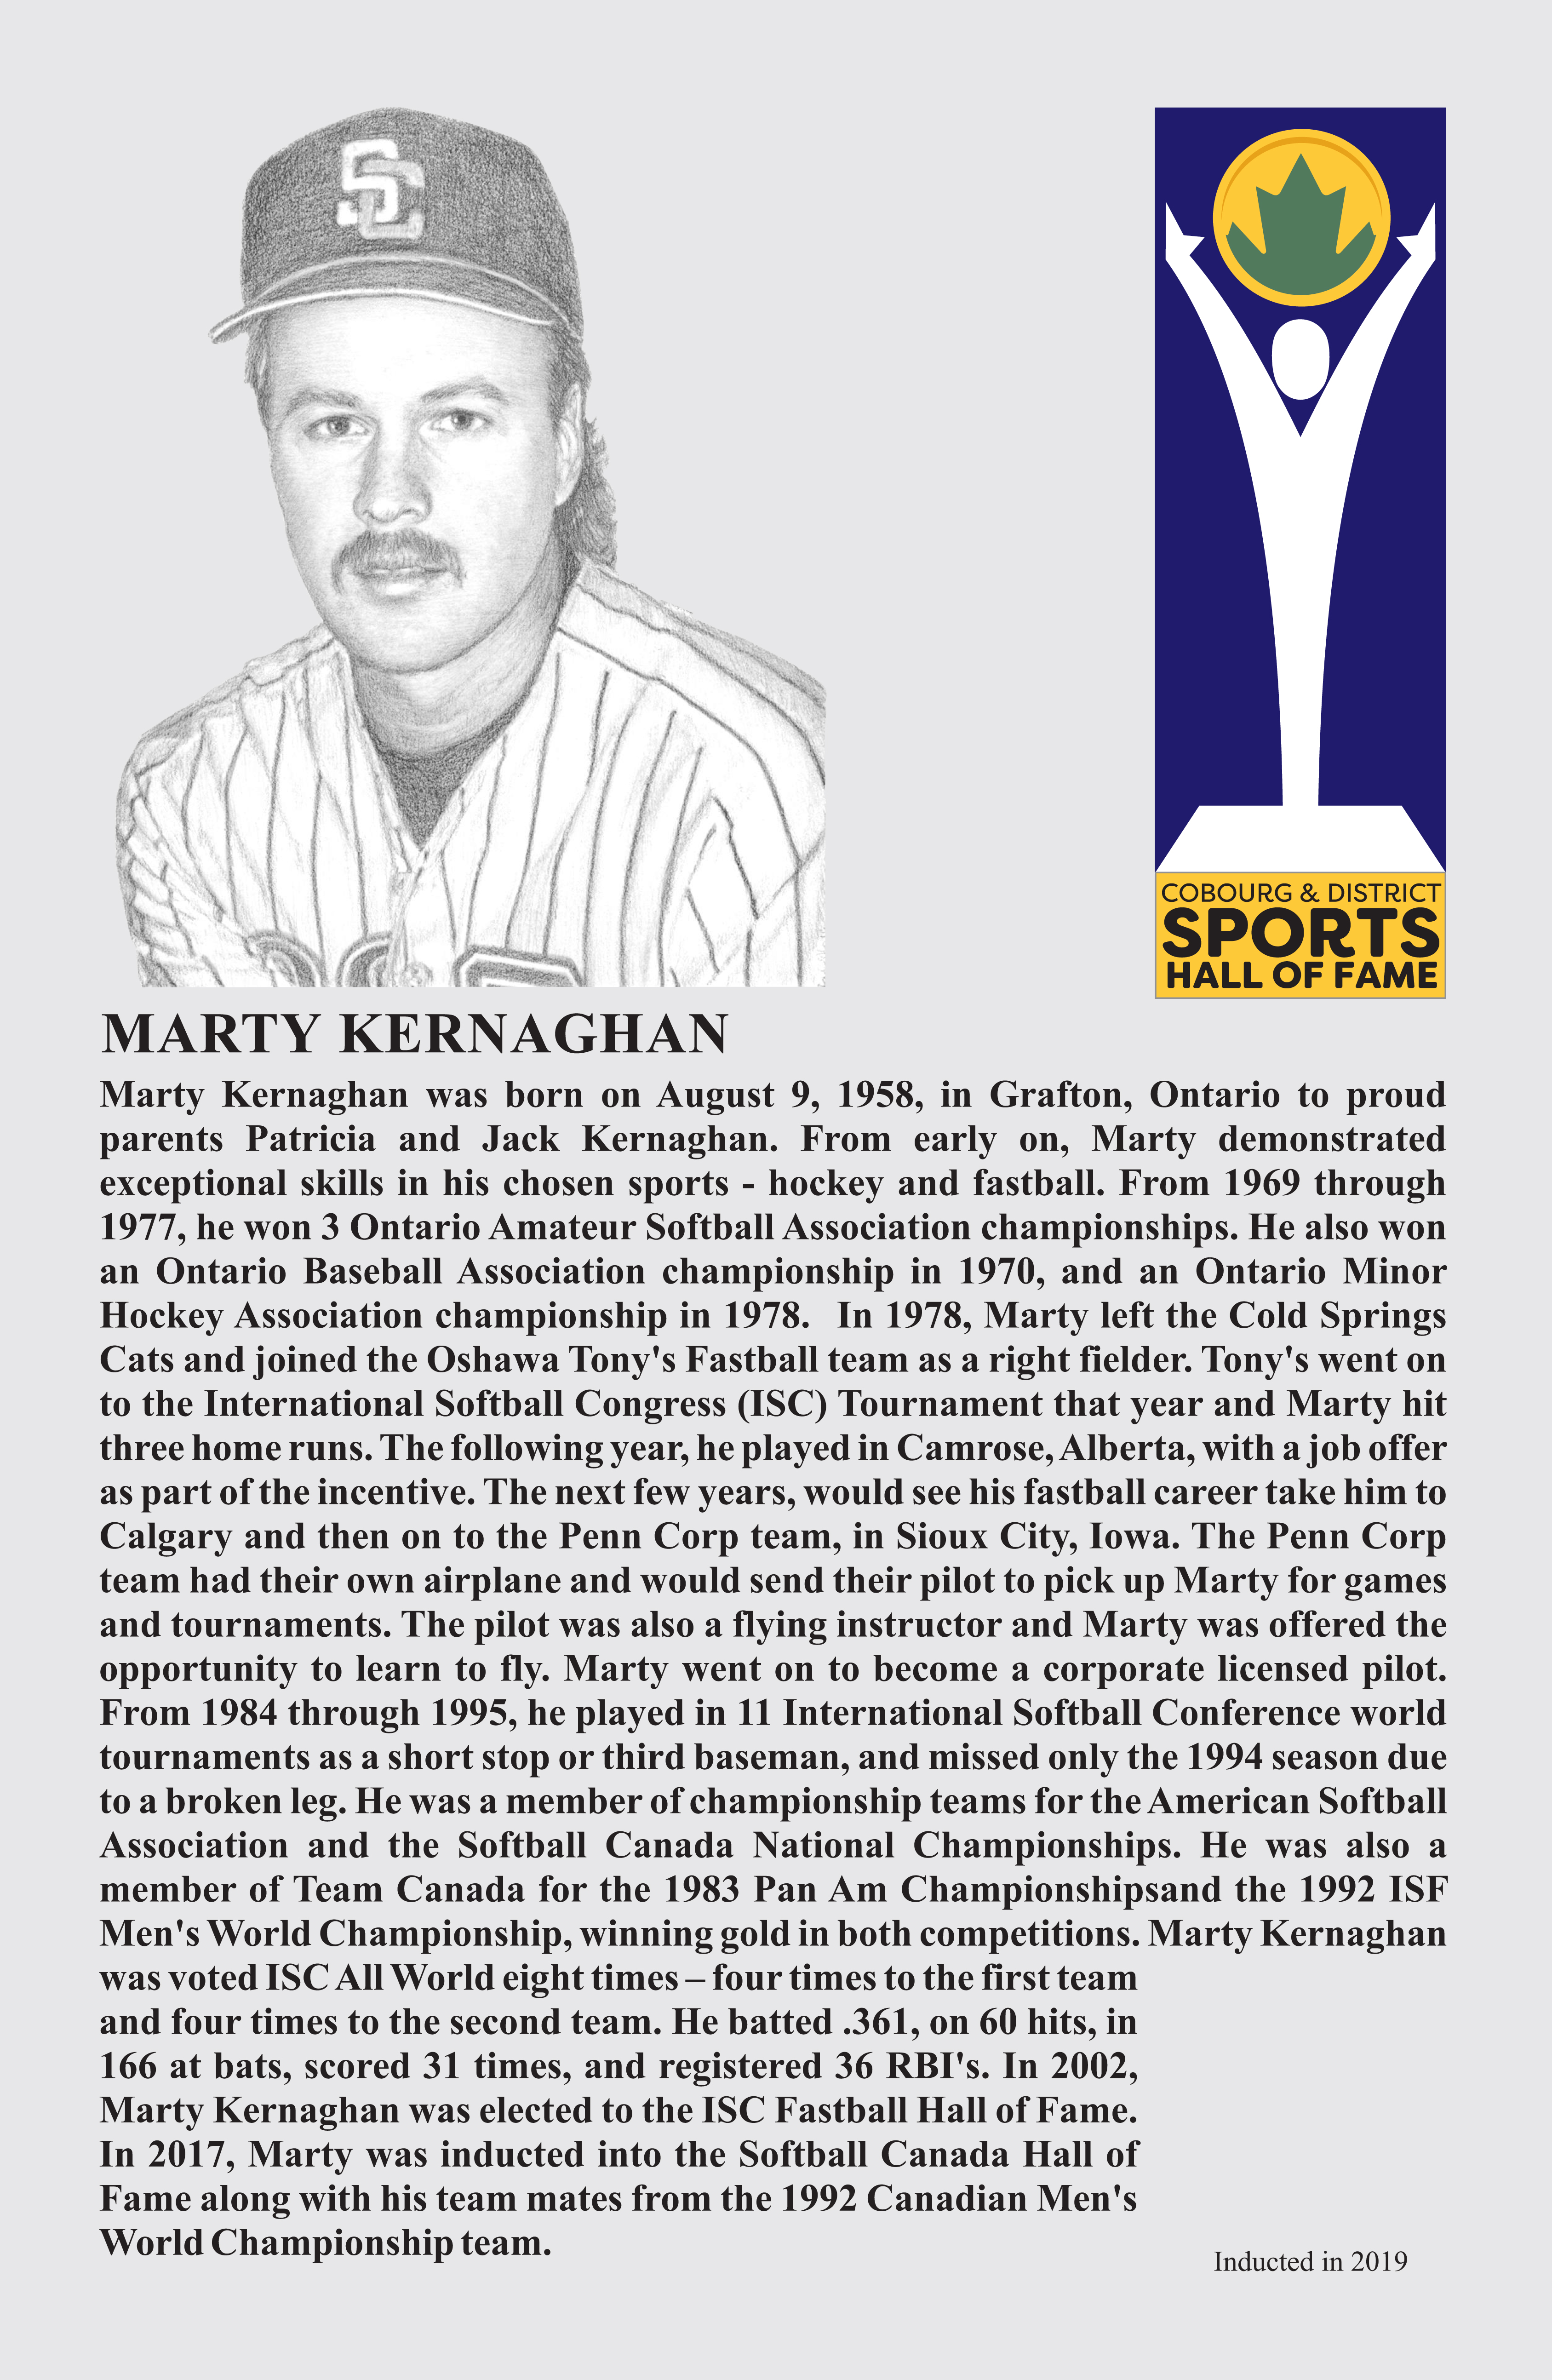 MARTY KERNAGHAN